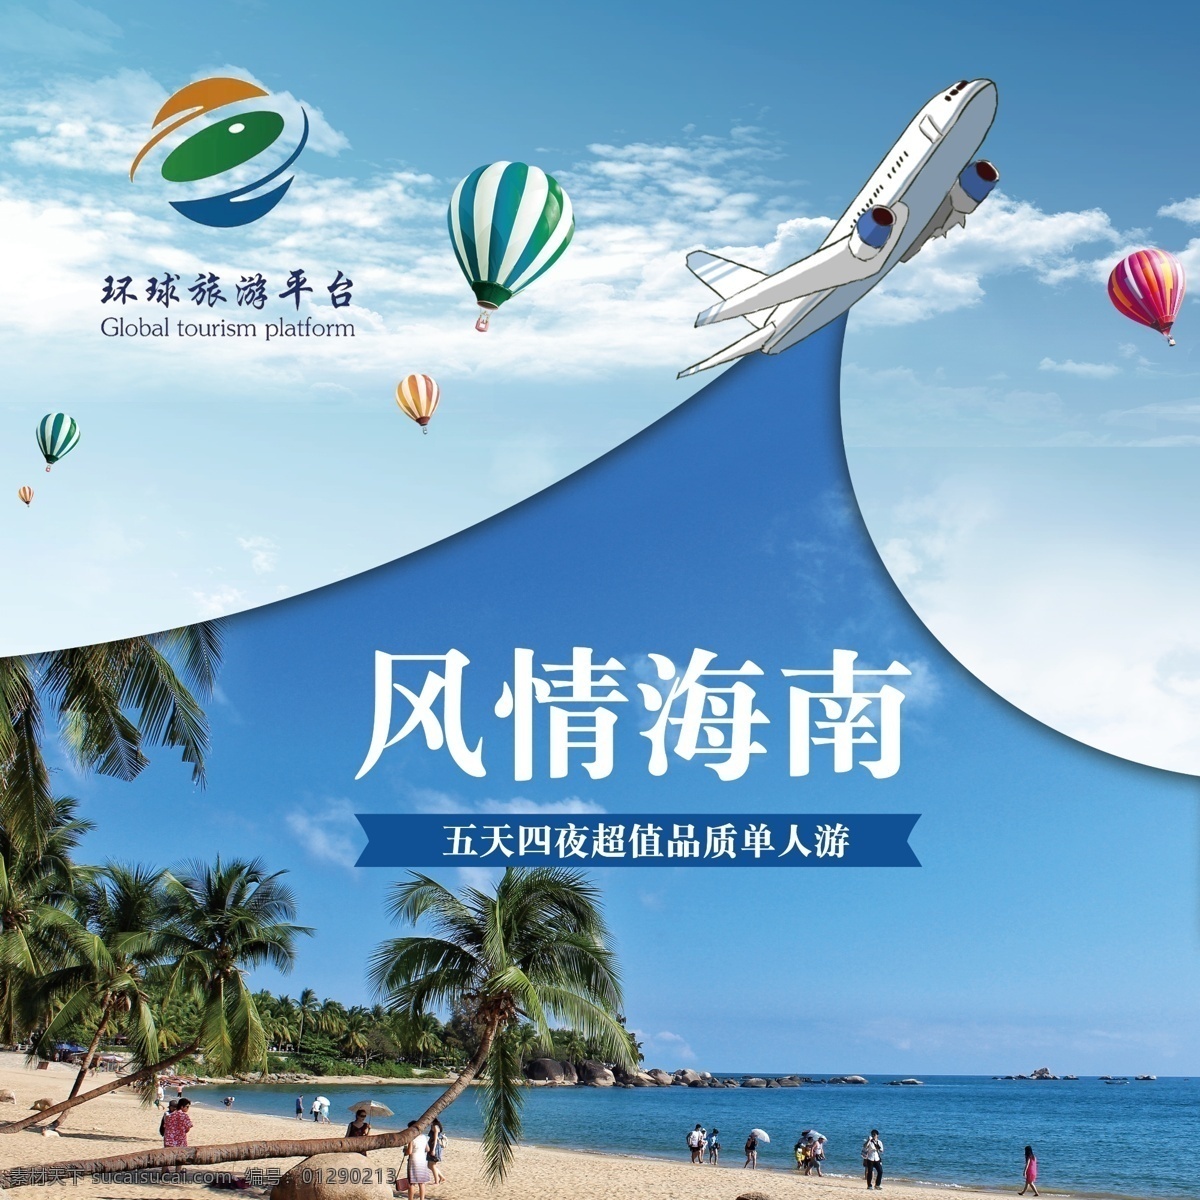 海南主图图片 风情海南 海南 飞机 热气球 蓝天白云 海南旅游 海南旅行 环球旅游平台